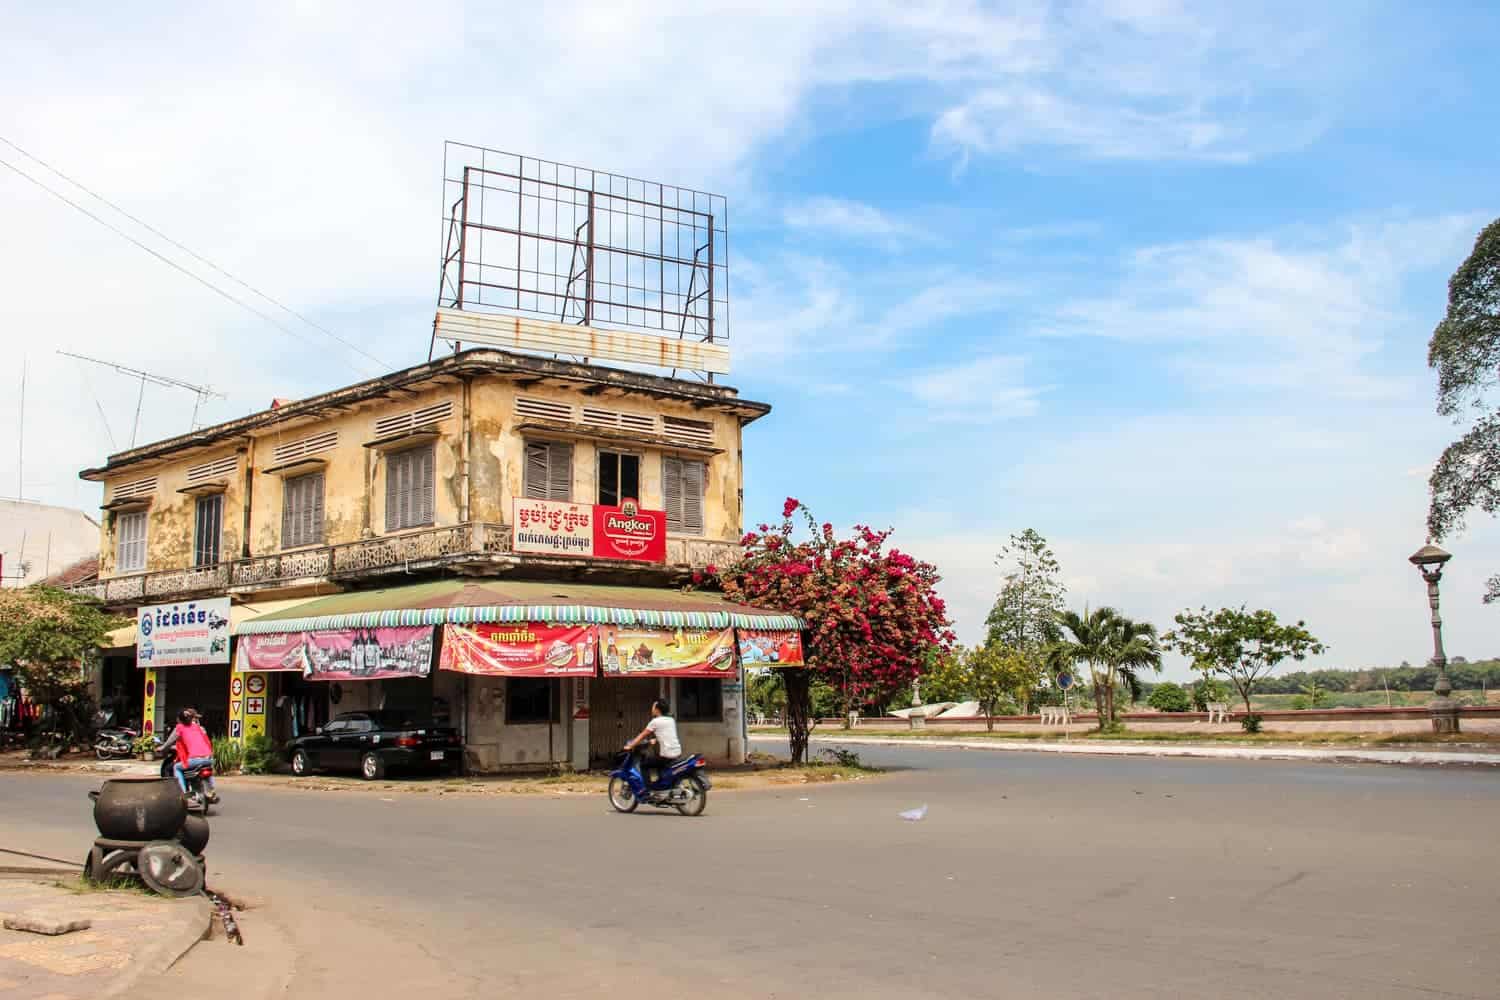 Ciudad de Kampong Cham en Camboya